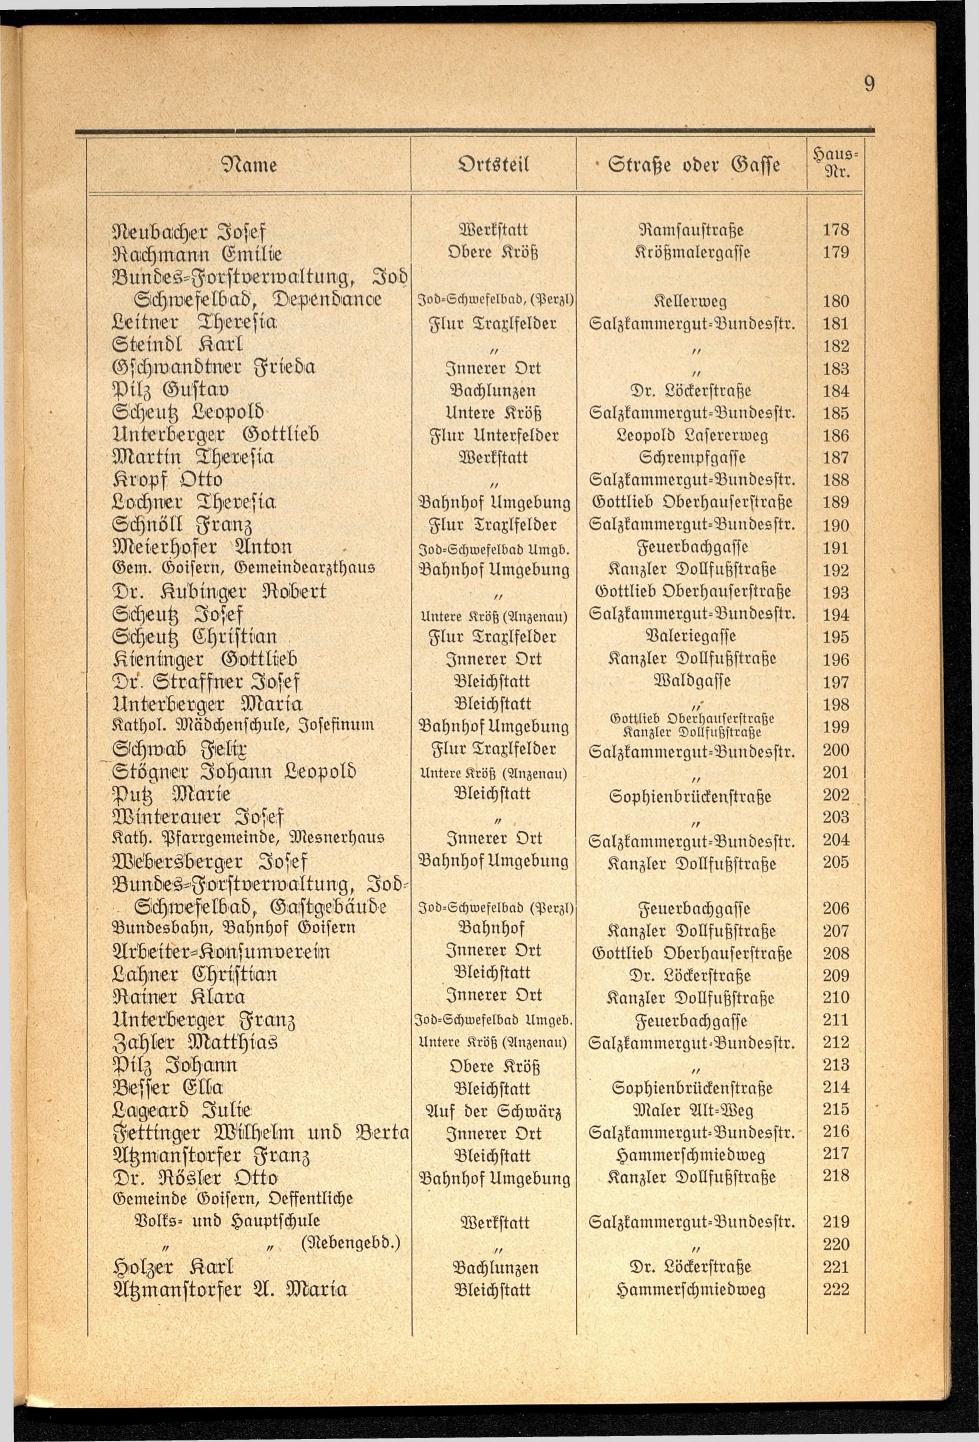 Häuser-Verzeichnis der Gemeinde Goisern nach dem Stande von November 1937 - Seite 11